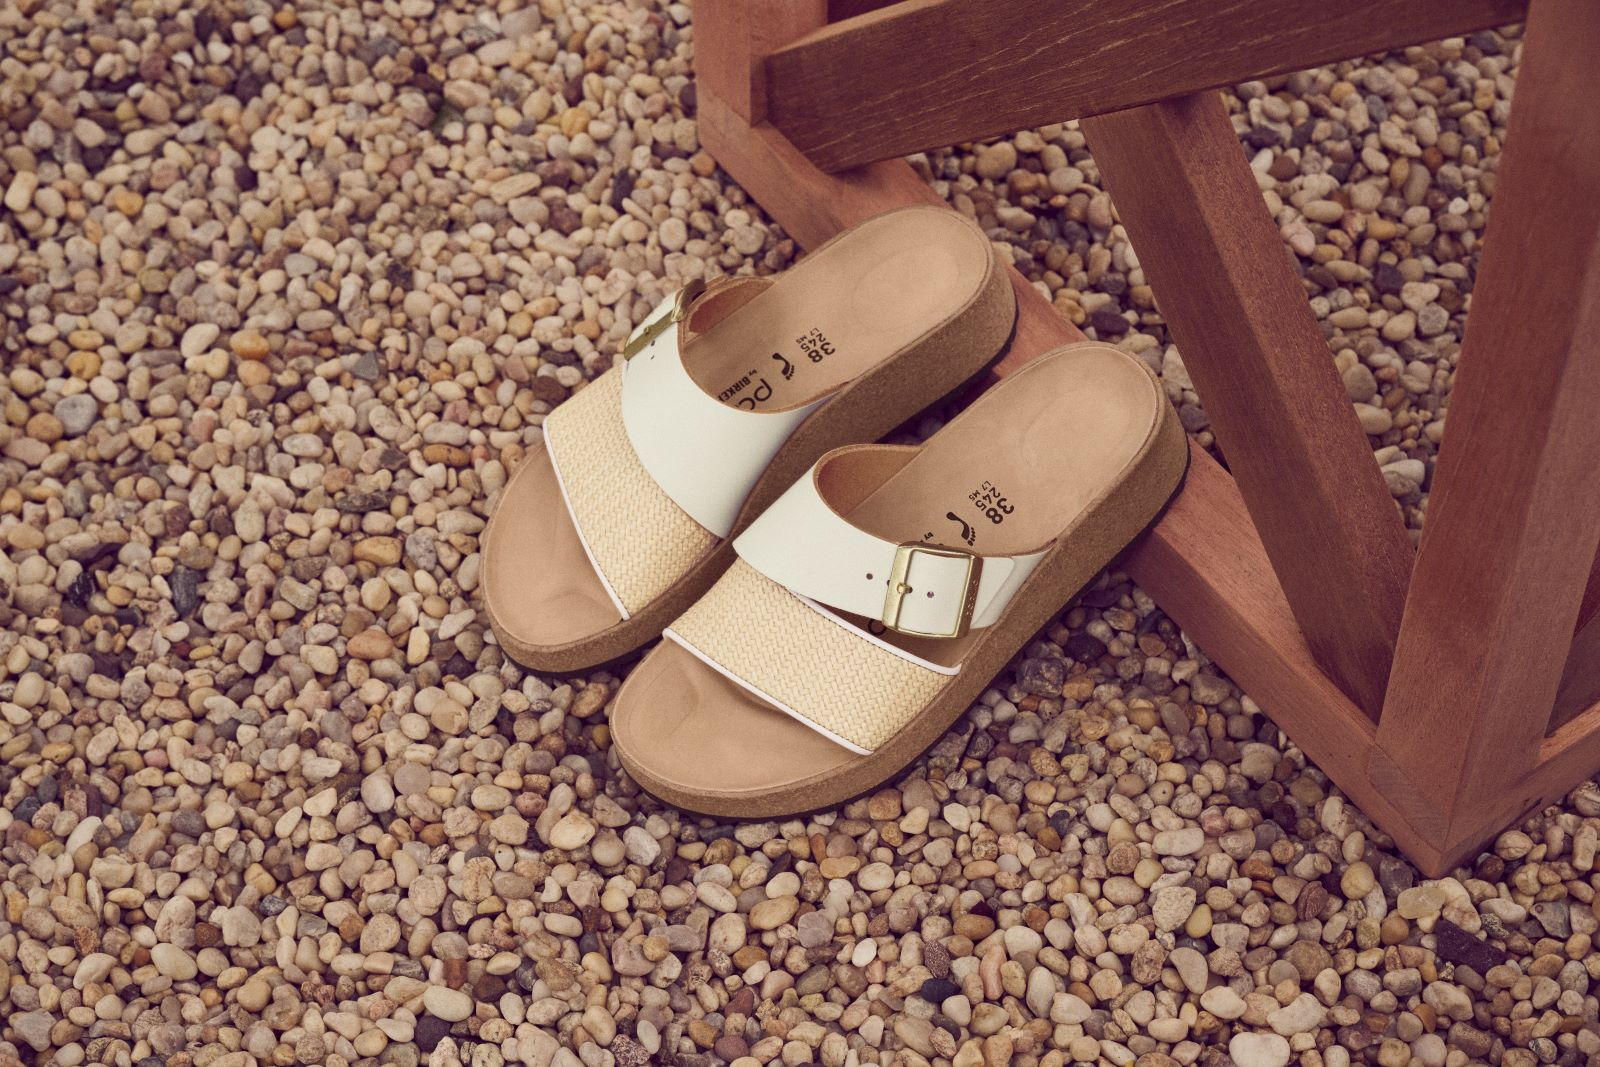 Arizona Suede Sandals in Brown - Birkenstock